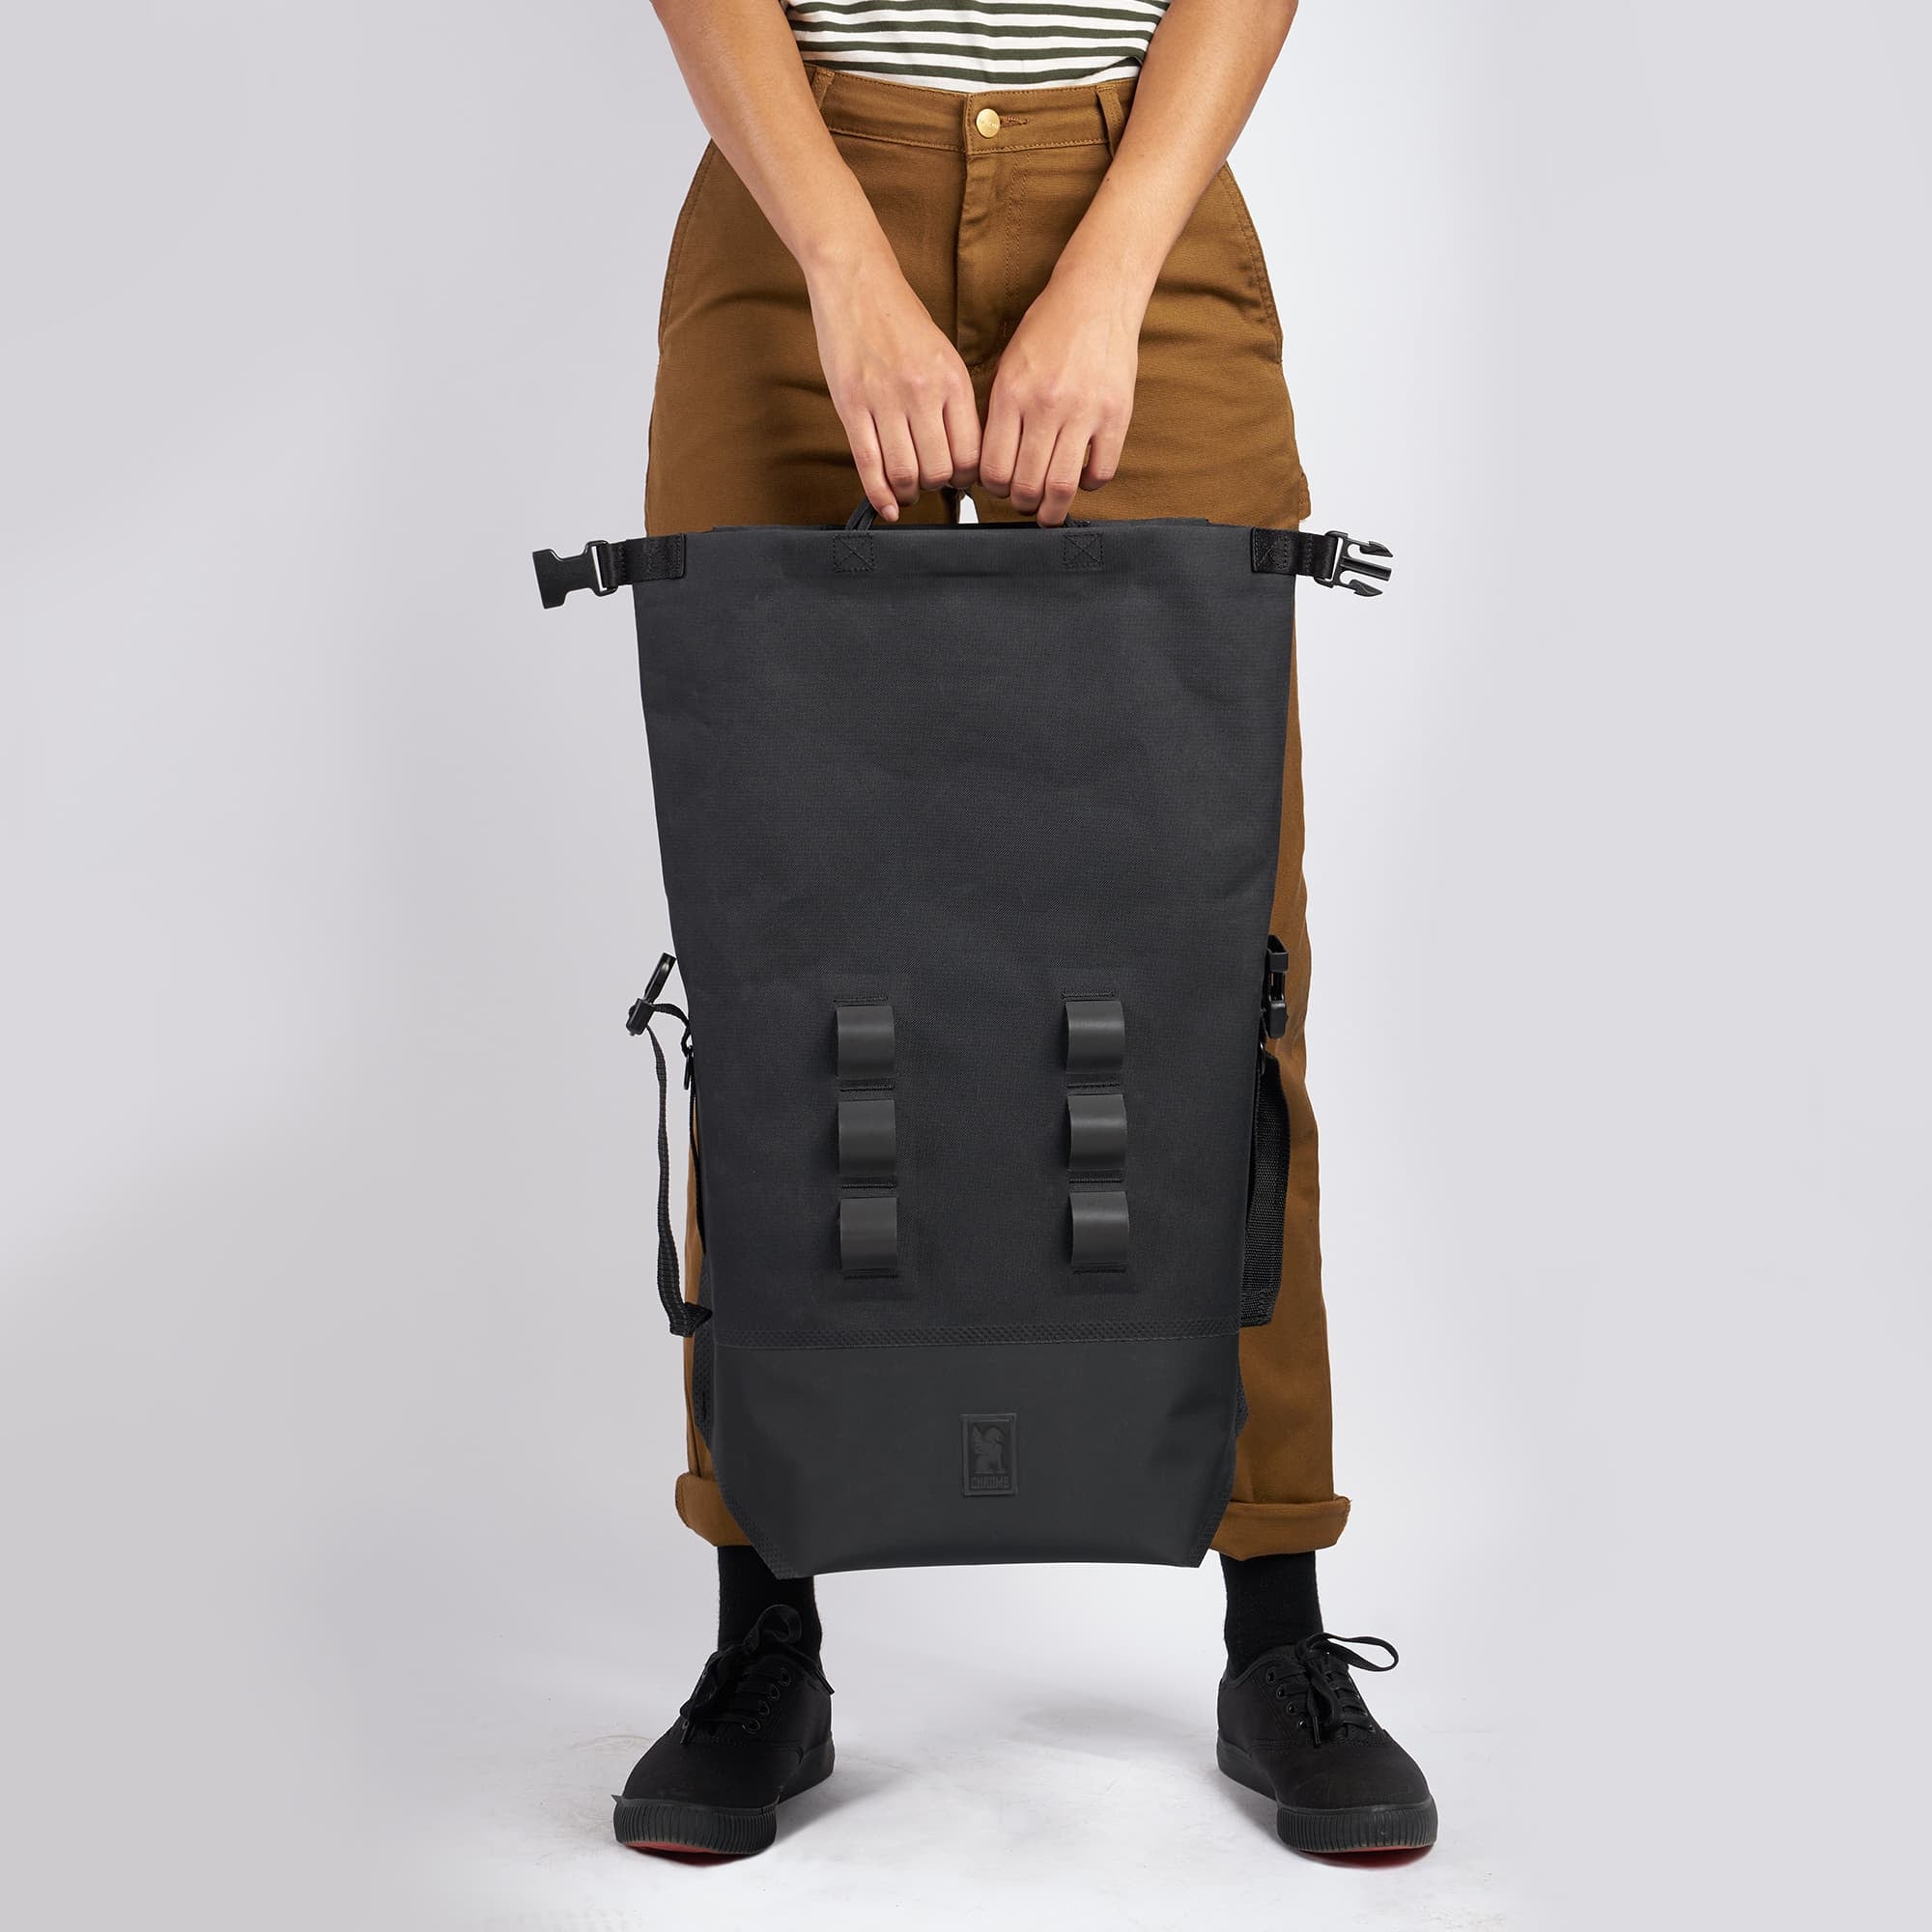 Waterproof 20L backpack in black top handles held by a woman